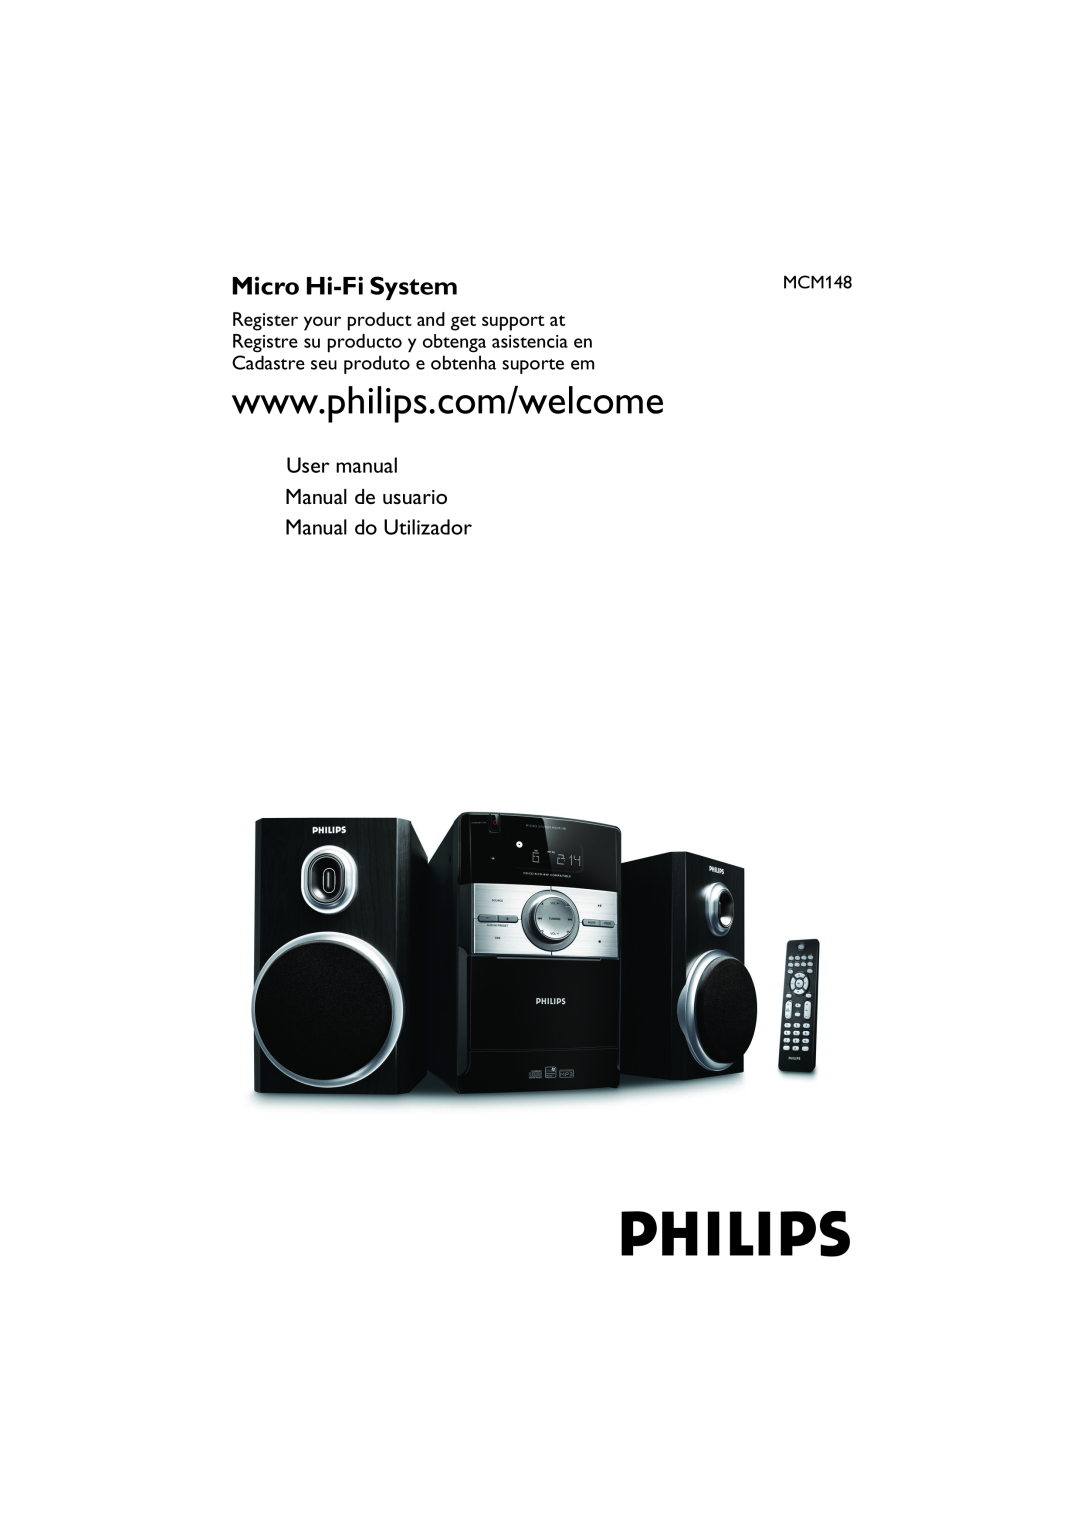 Philips MCM148 user manual 用戶手冊, Micro Hi-FiSystem 